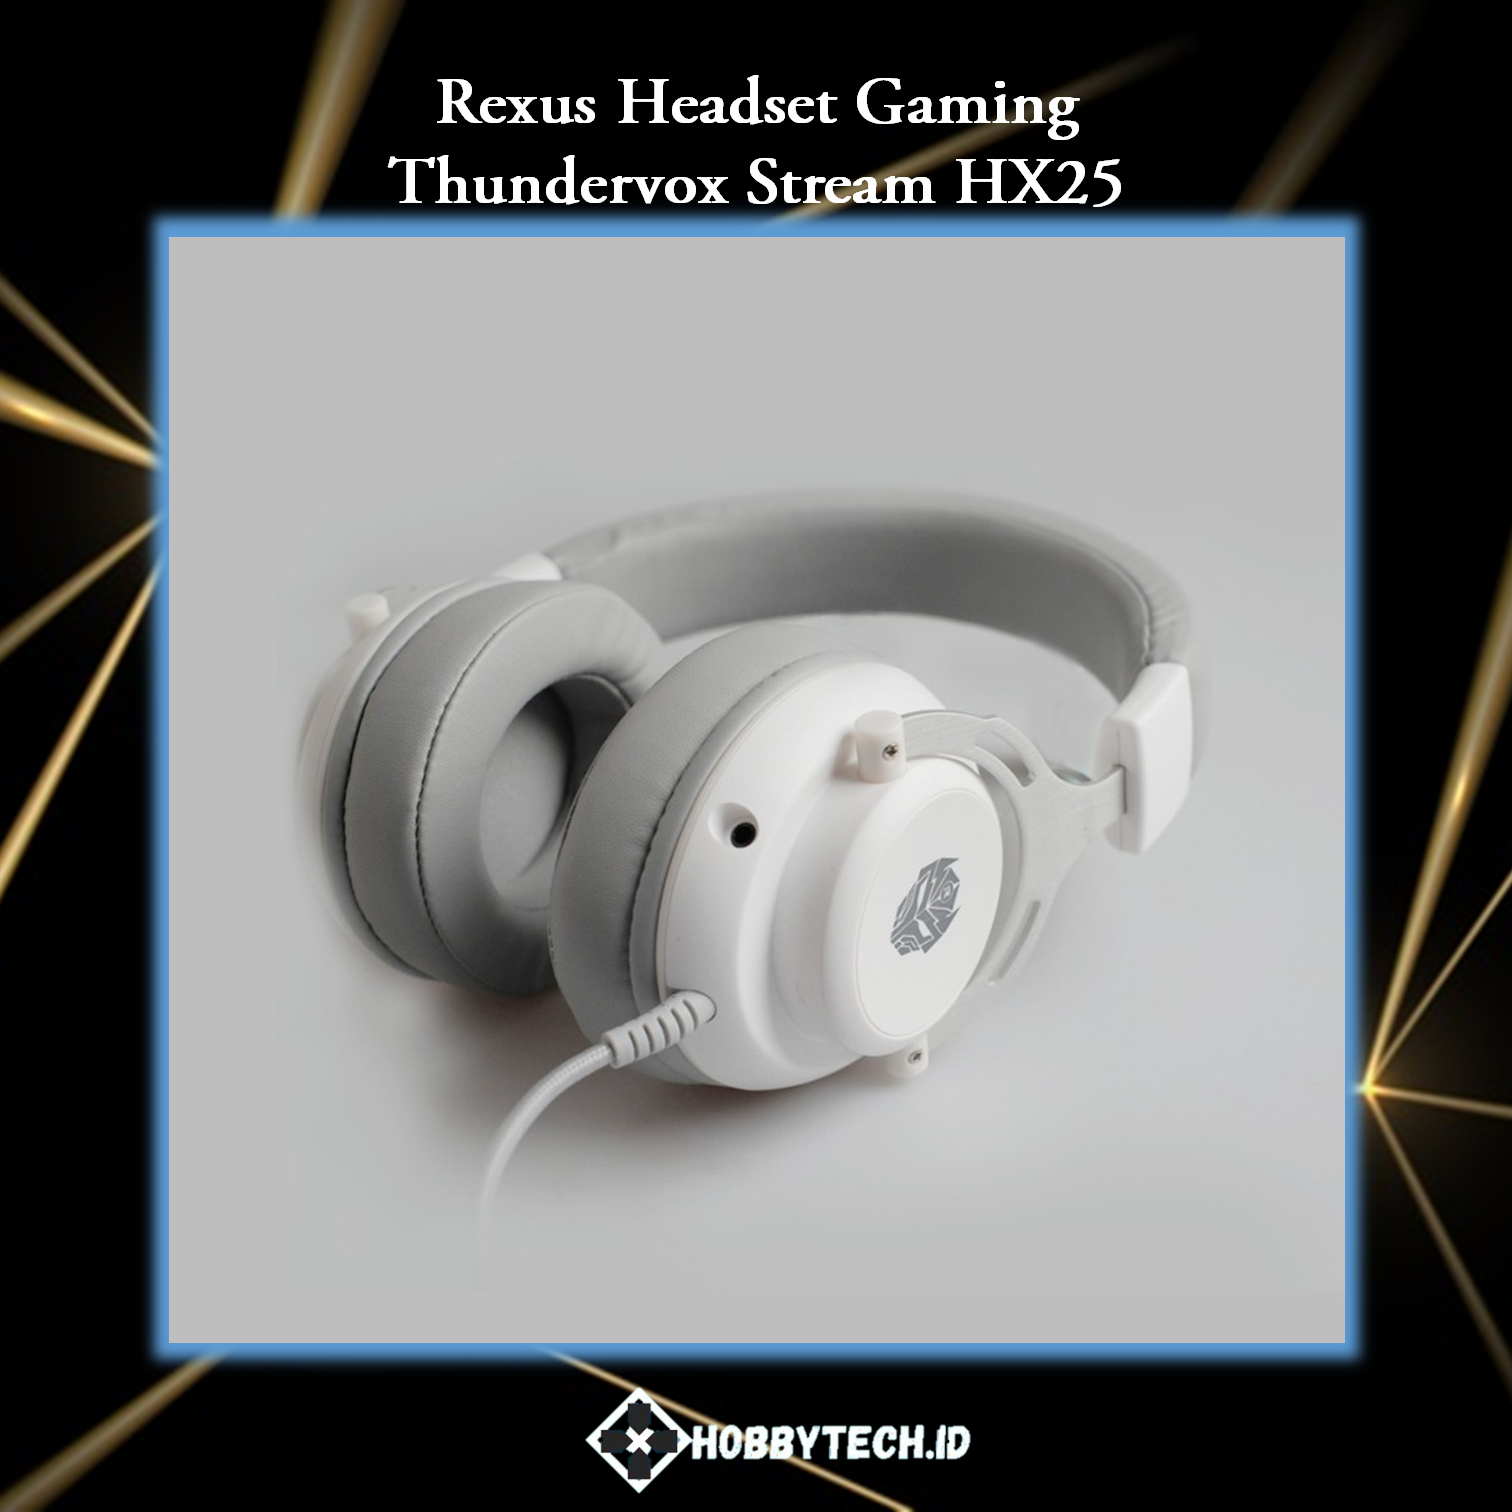 Rexus Headset Gaming Thundervox Stream HX25